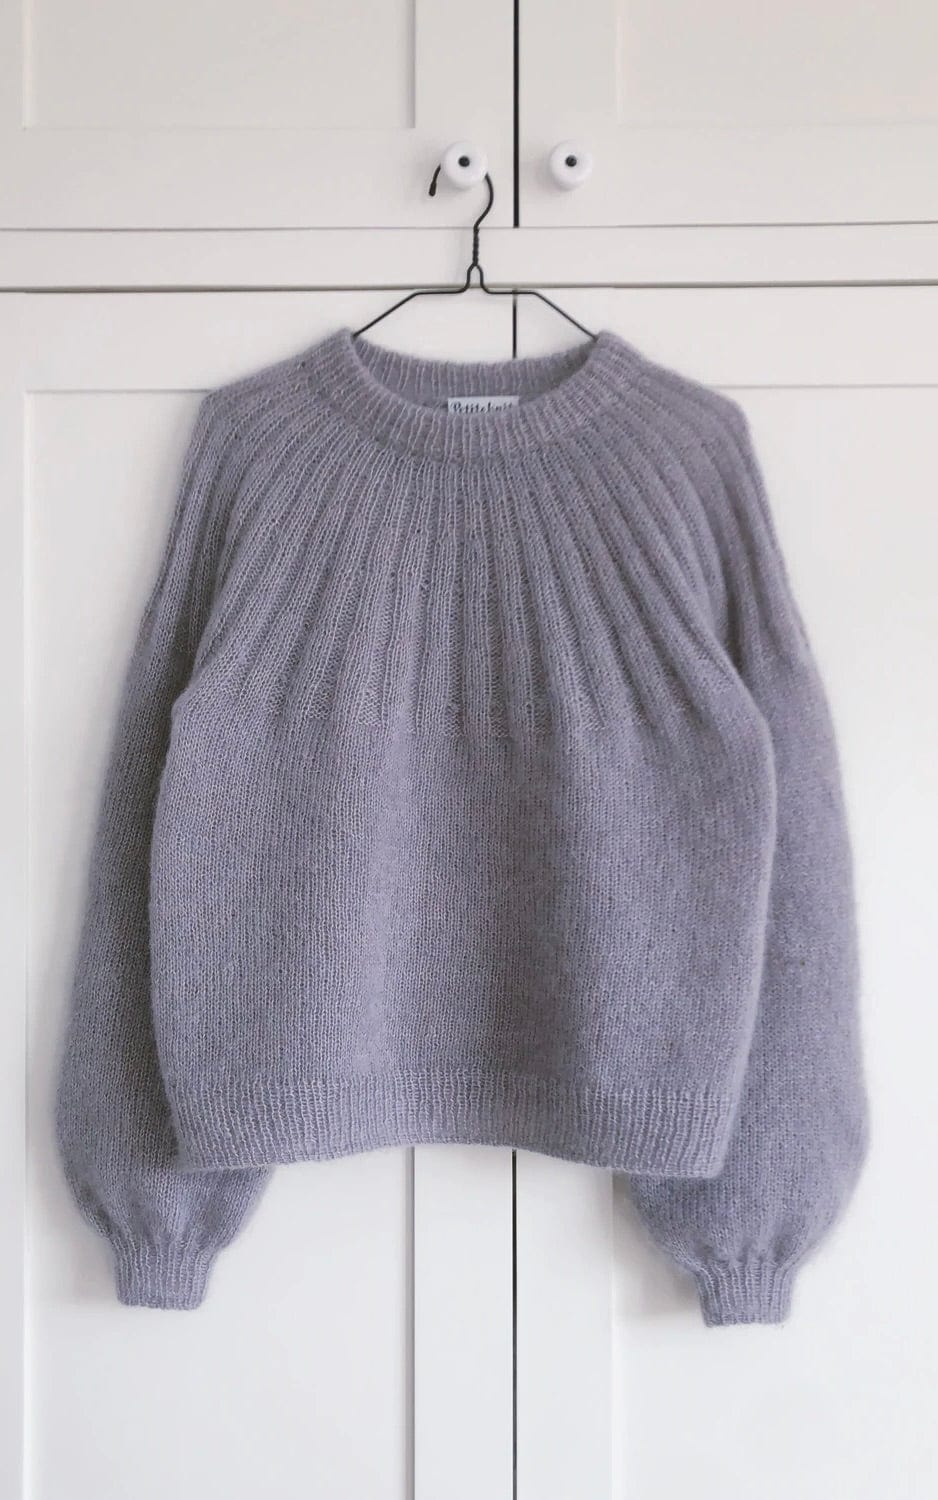 Sunday Sweater - Mohair Edition - TYNN SILK MOHAIR - Strickset von PETITE KNIT jetzt online kaufen bei OONIQUE